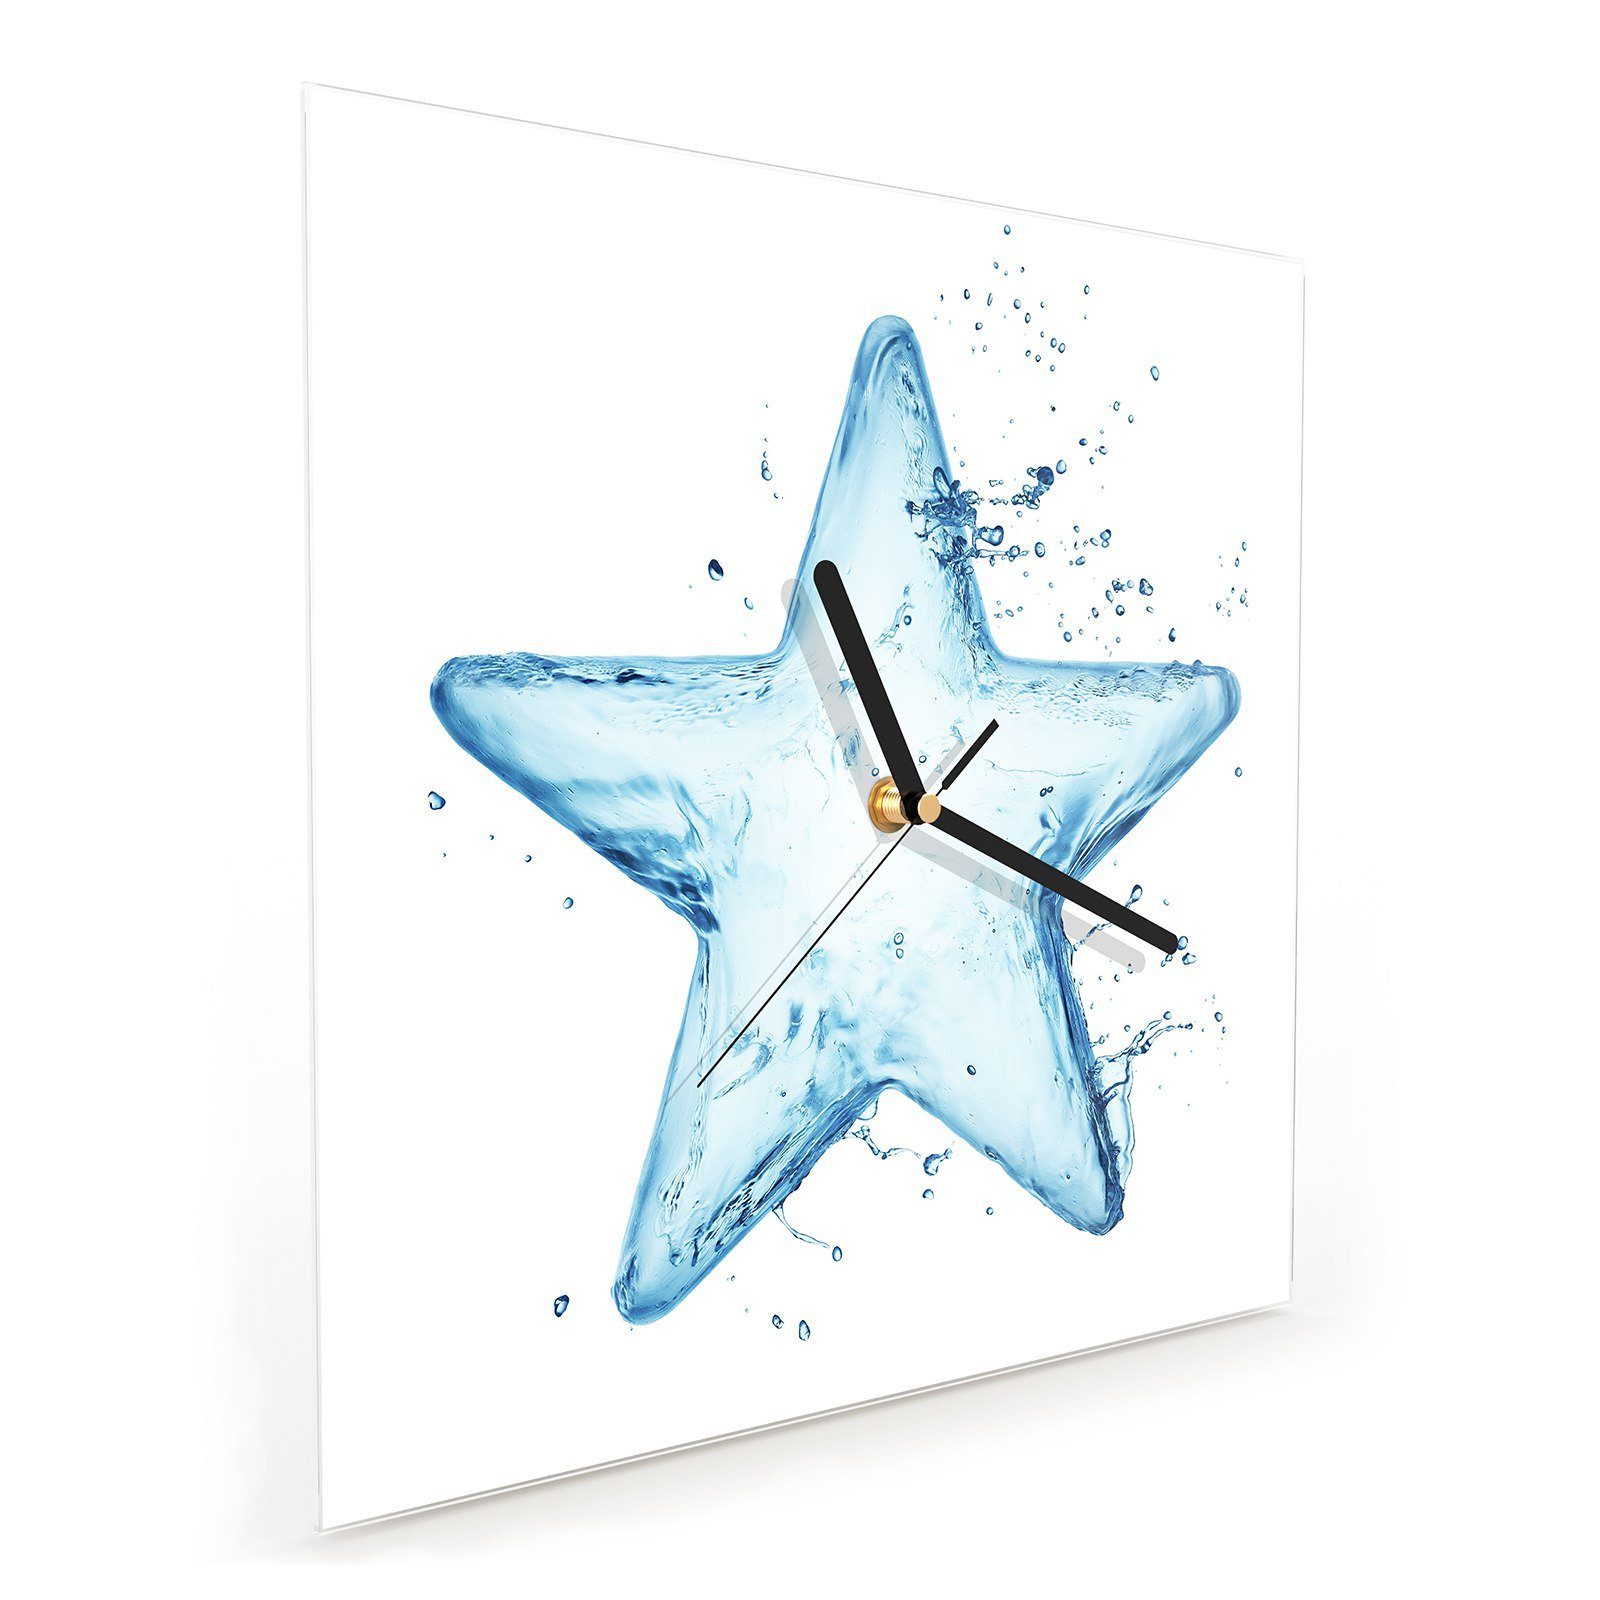 x Größe 30 Primedeco Glasuhr Motiv mit aus Wasser Wandkunst Wanduhr 30 cm Stern Wanduhr